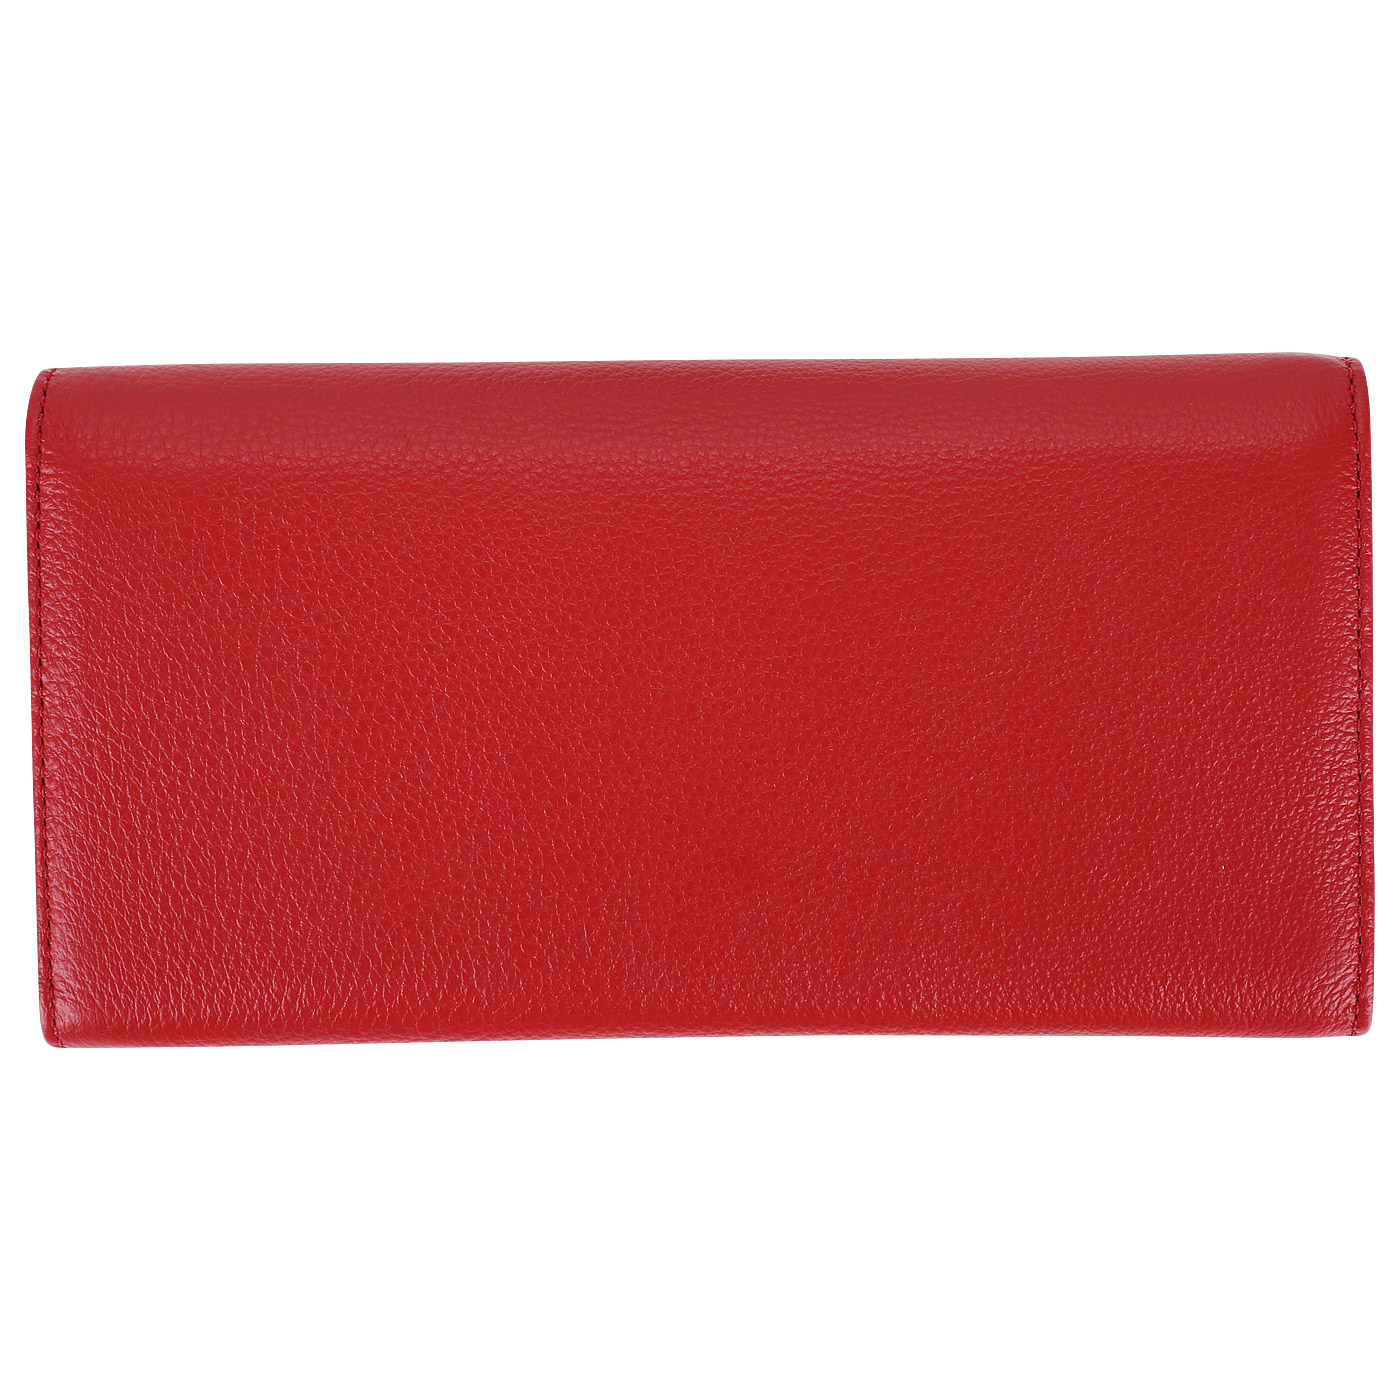 Женское портмоне из красной кожи Coccinelle Metallic Soft